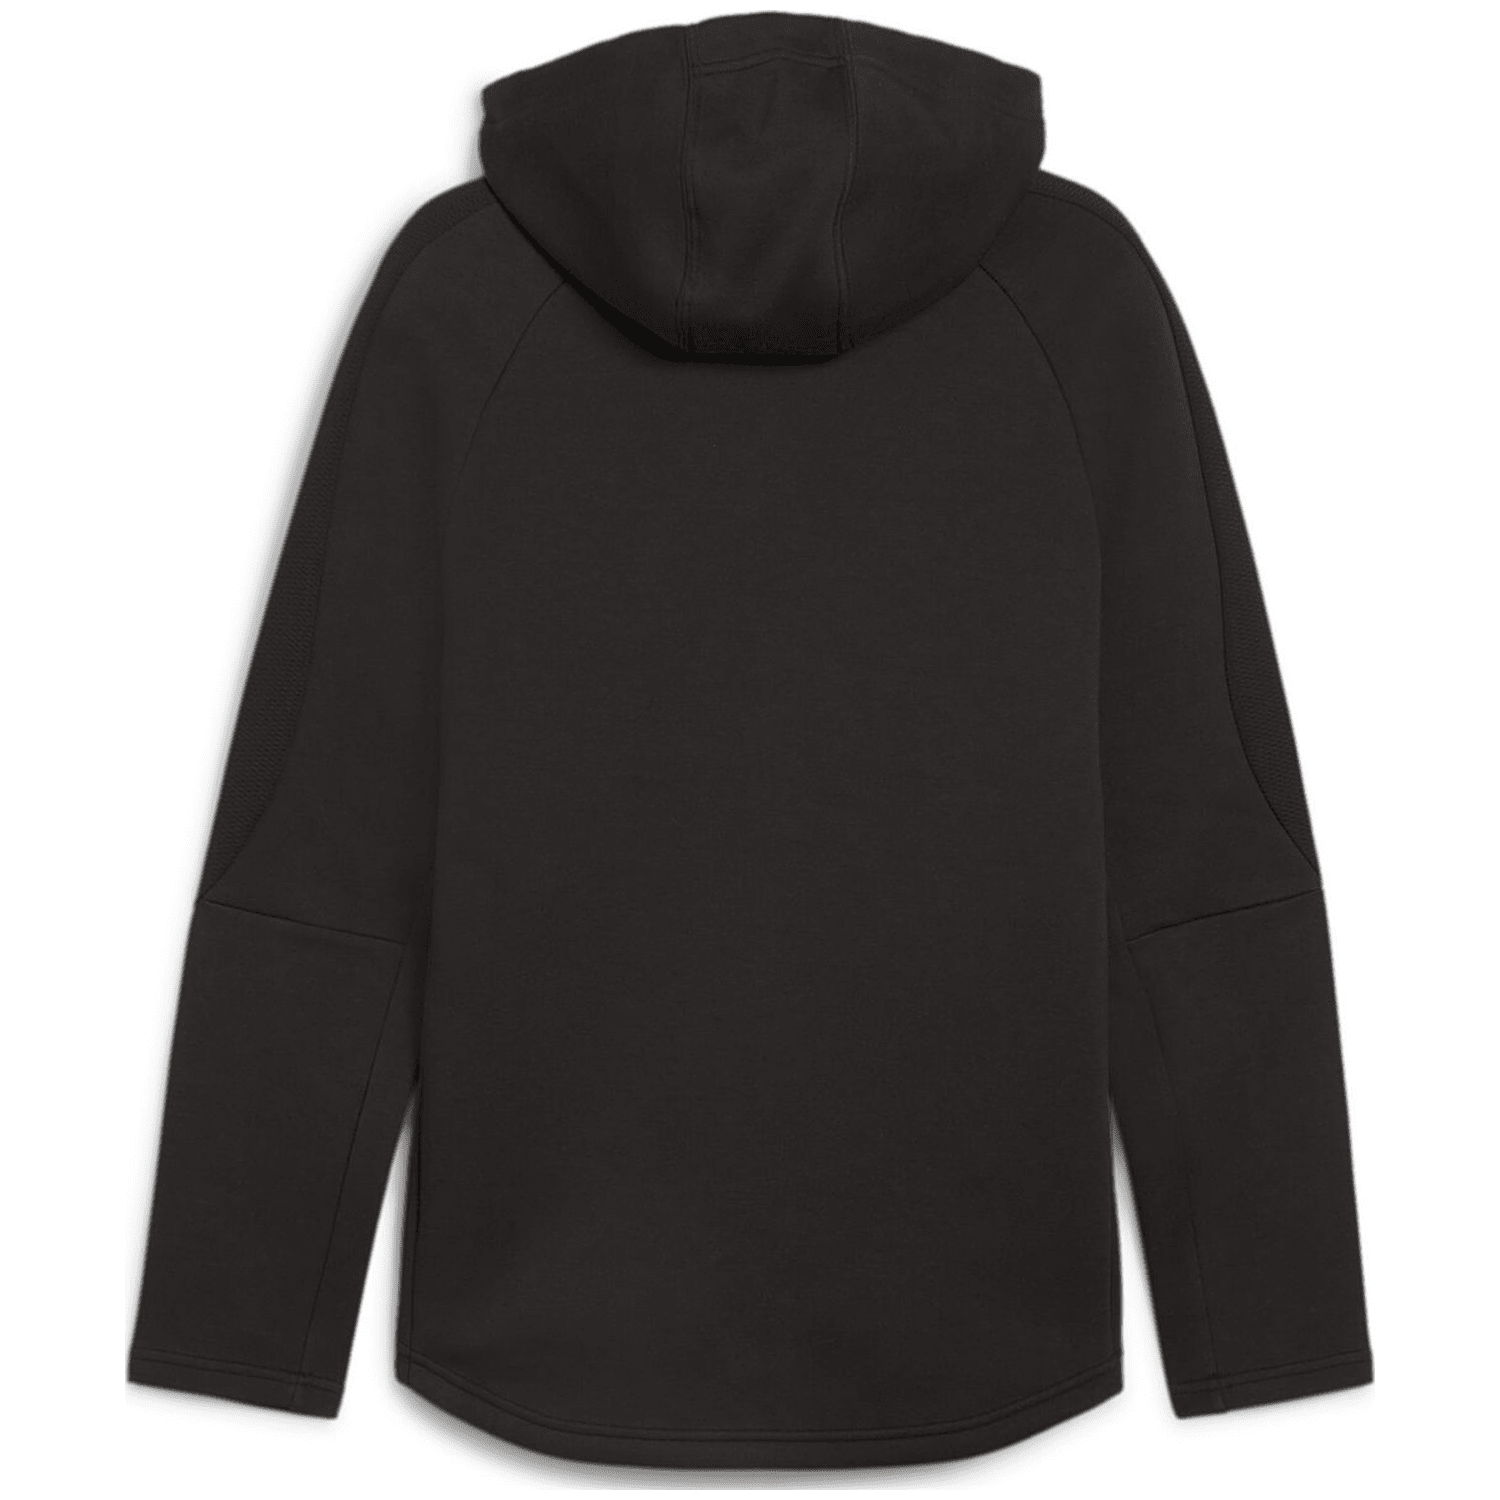 Puma Evostripe Full-Zip DK Herren Kapuzensweater